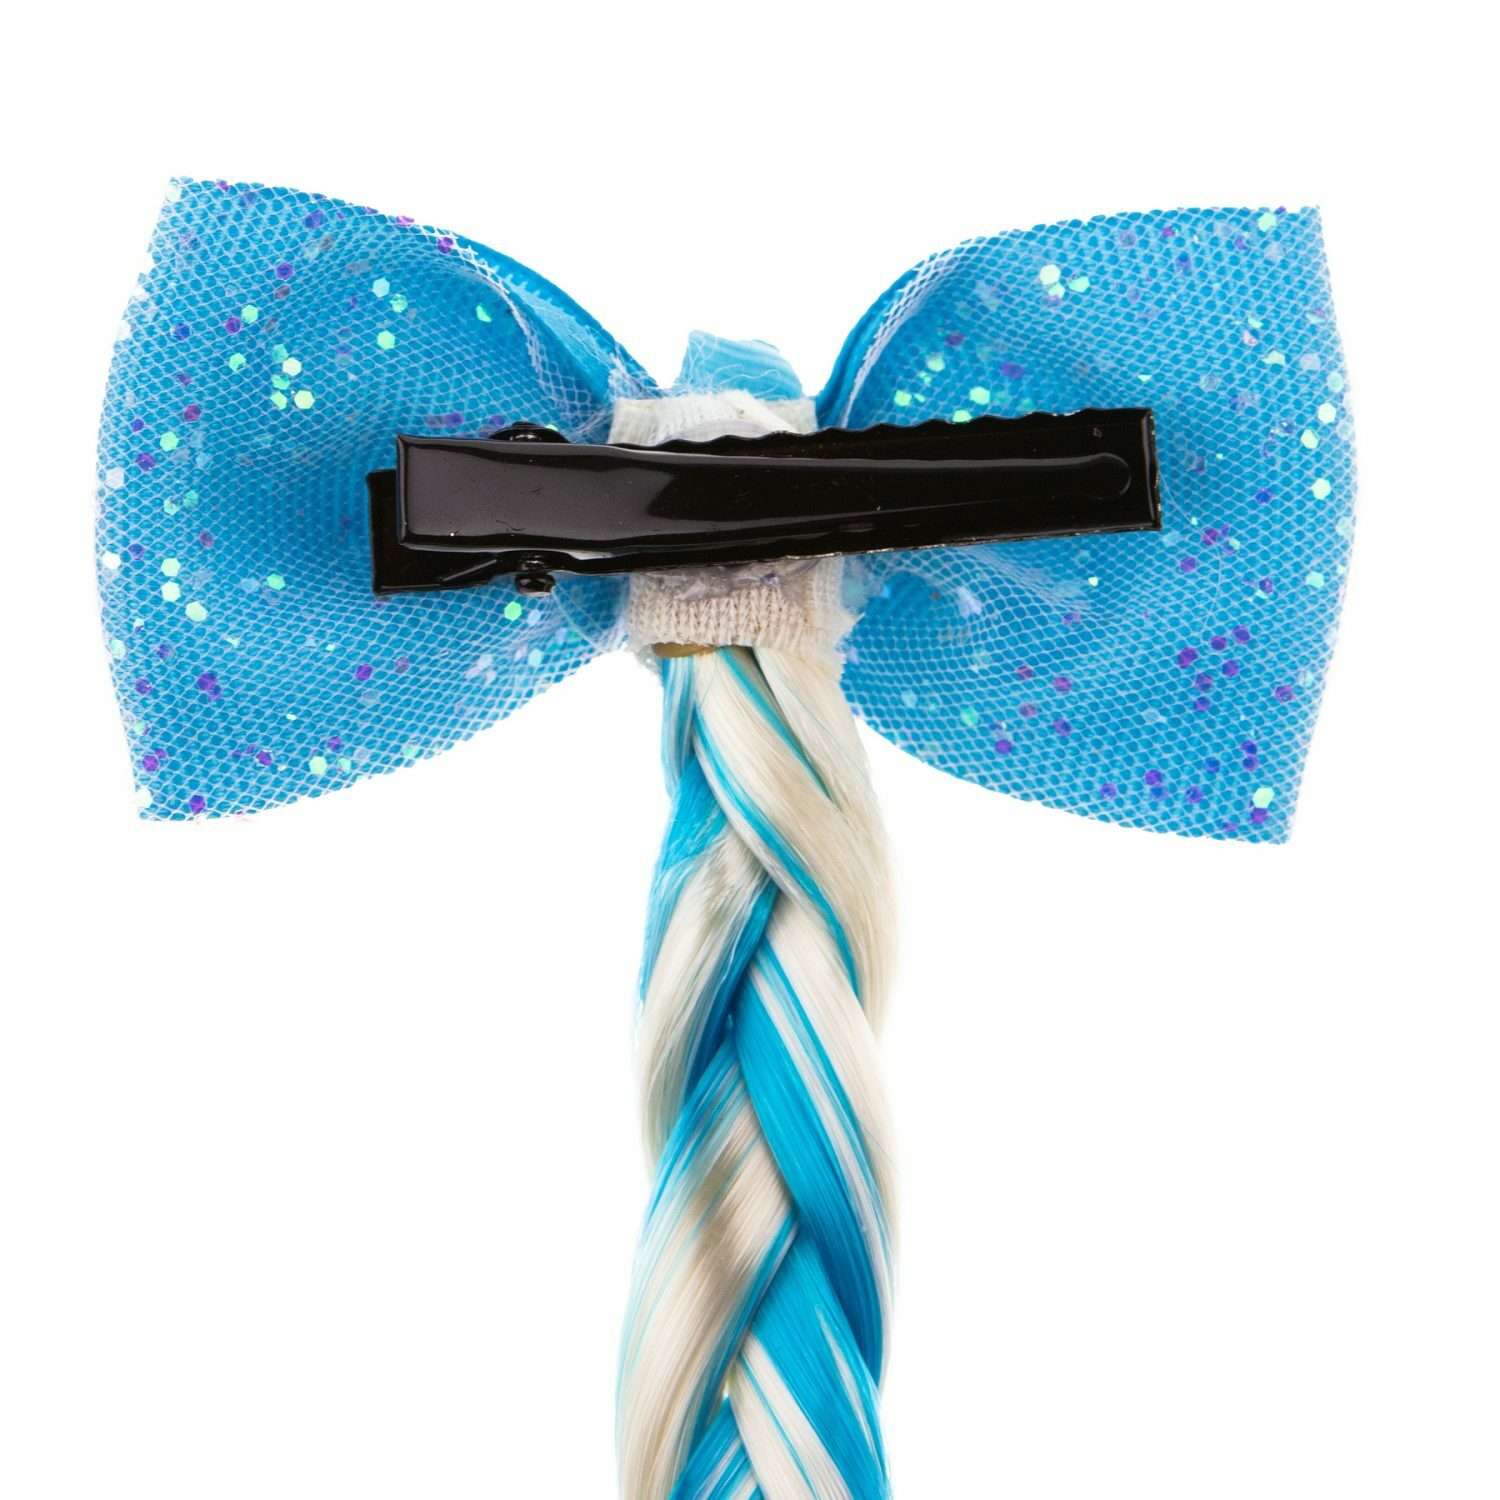 Цветные пряди для волос Lukky Fashion на заколках искусственные детские бело-голубой цвет 40 см аксессуары для девочек - фото 5